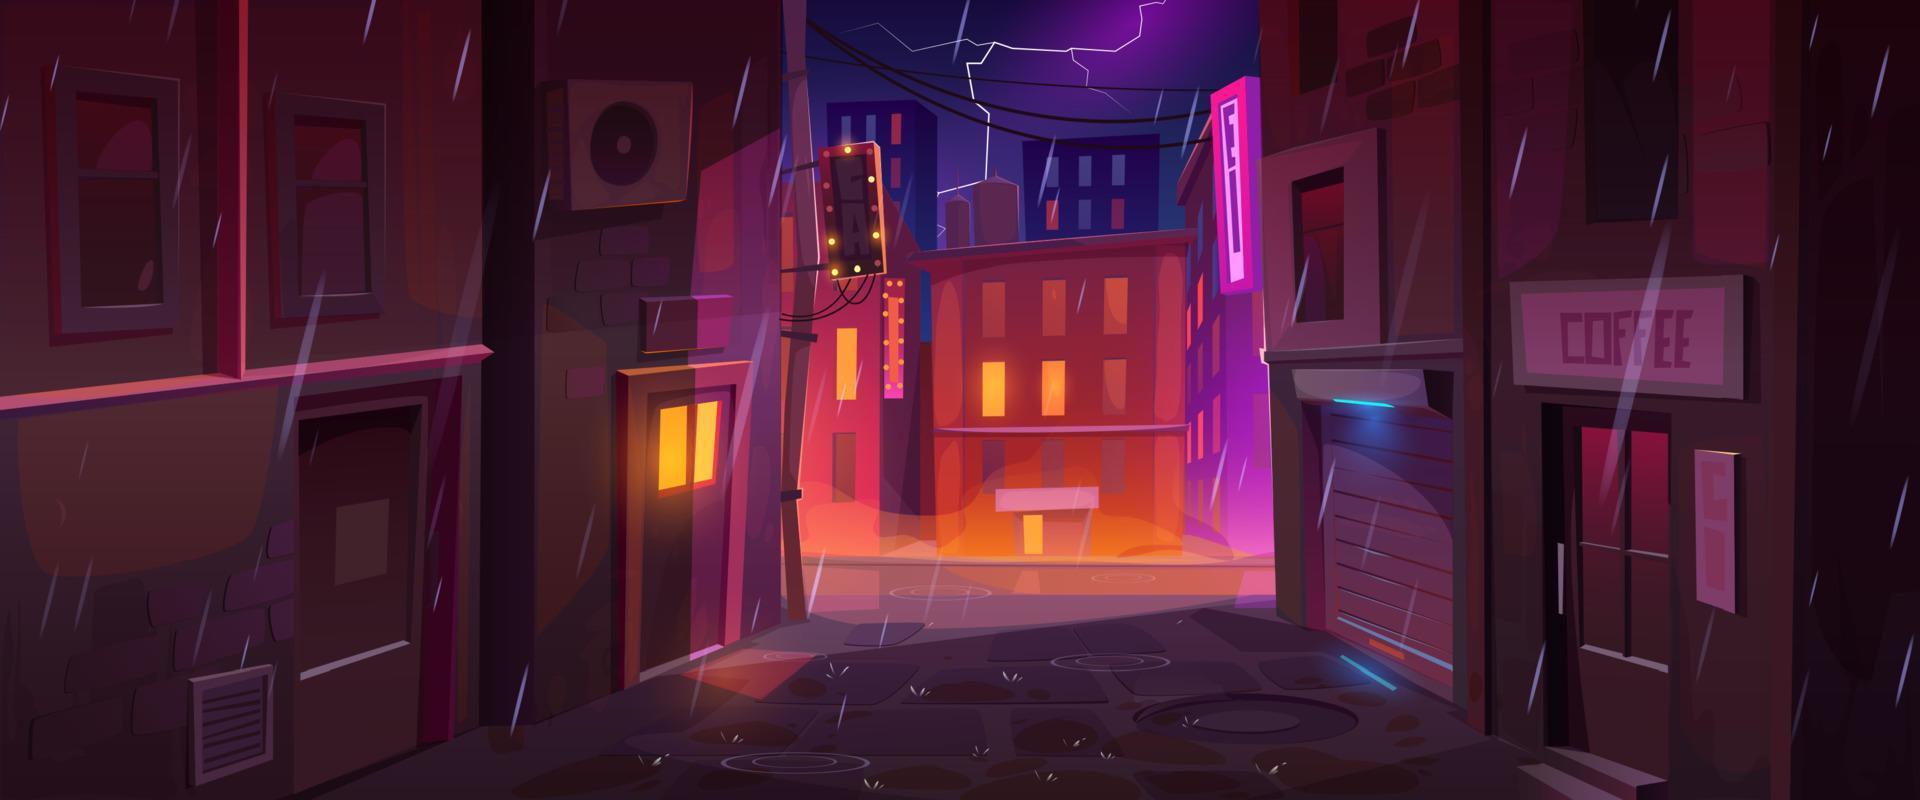 noche lluviosa en la ciudad, ilustración vectorial de dibujos animados vector